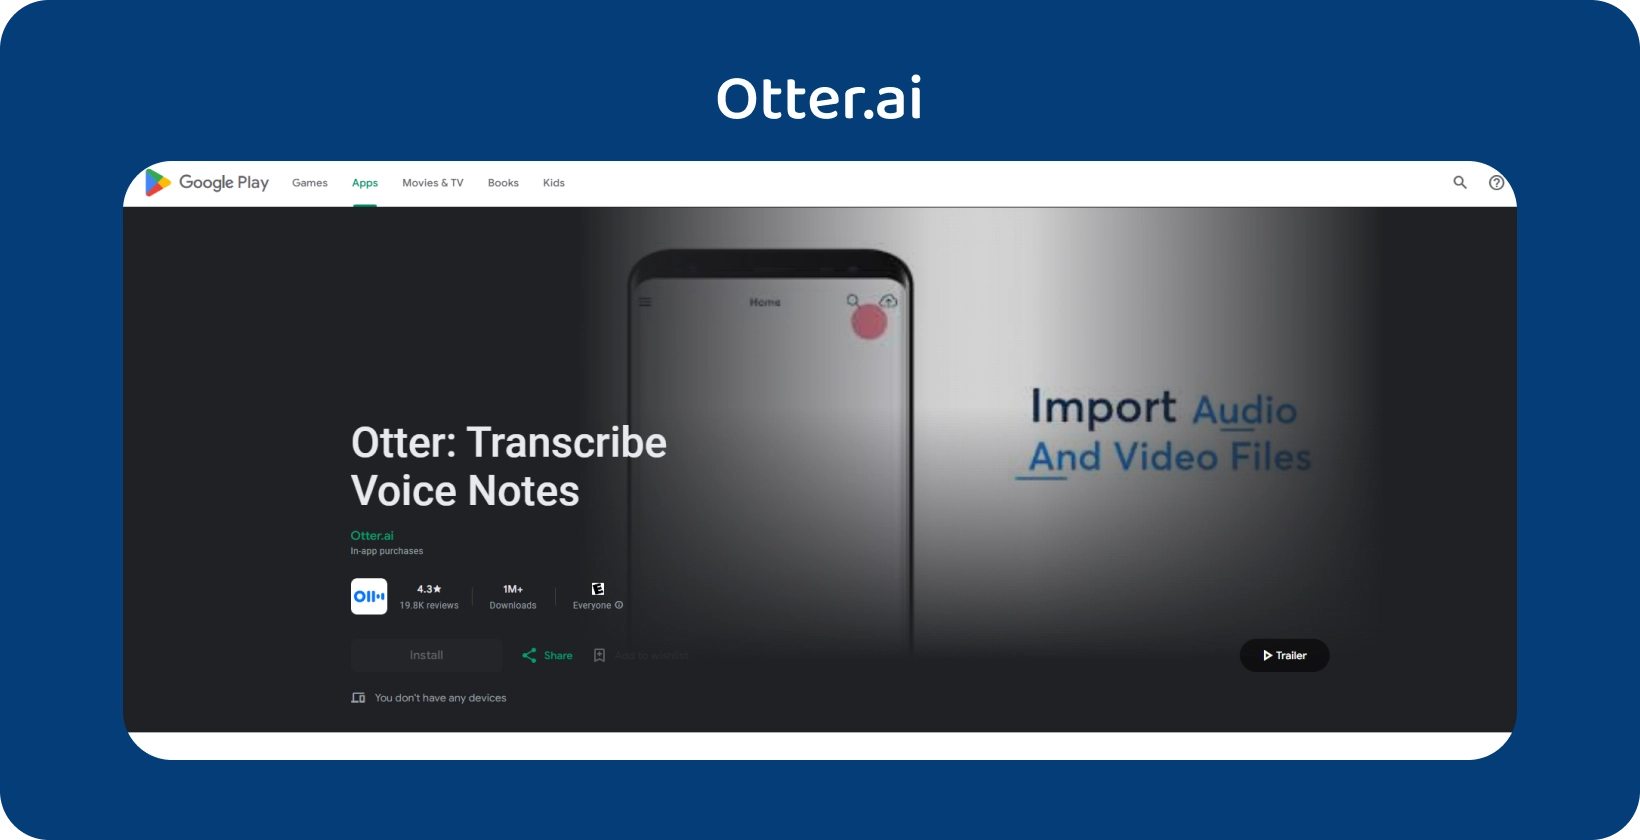 Aplicación Otter.ai en Google Play, con transcripción de notas de voz y capacidades de importación de archivos de audio / video.